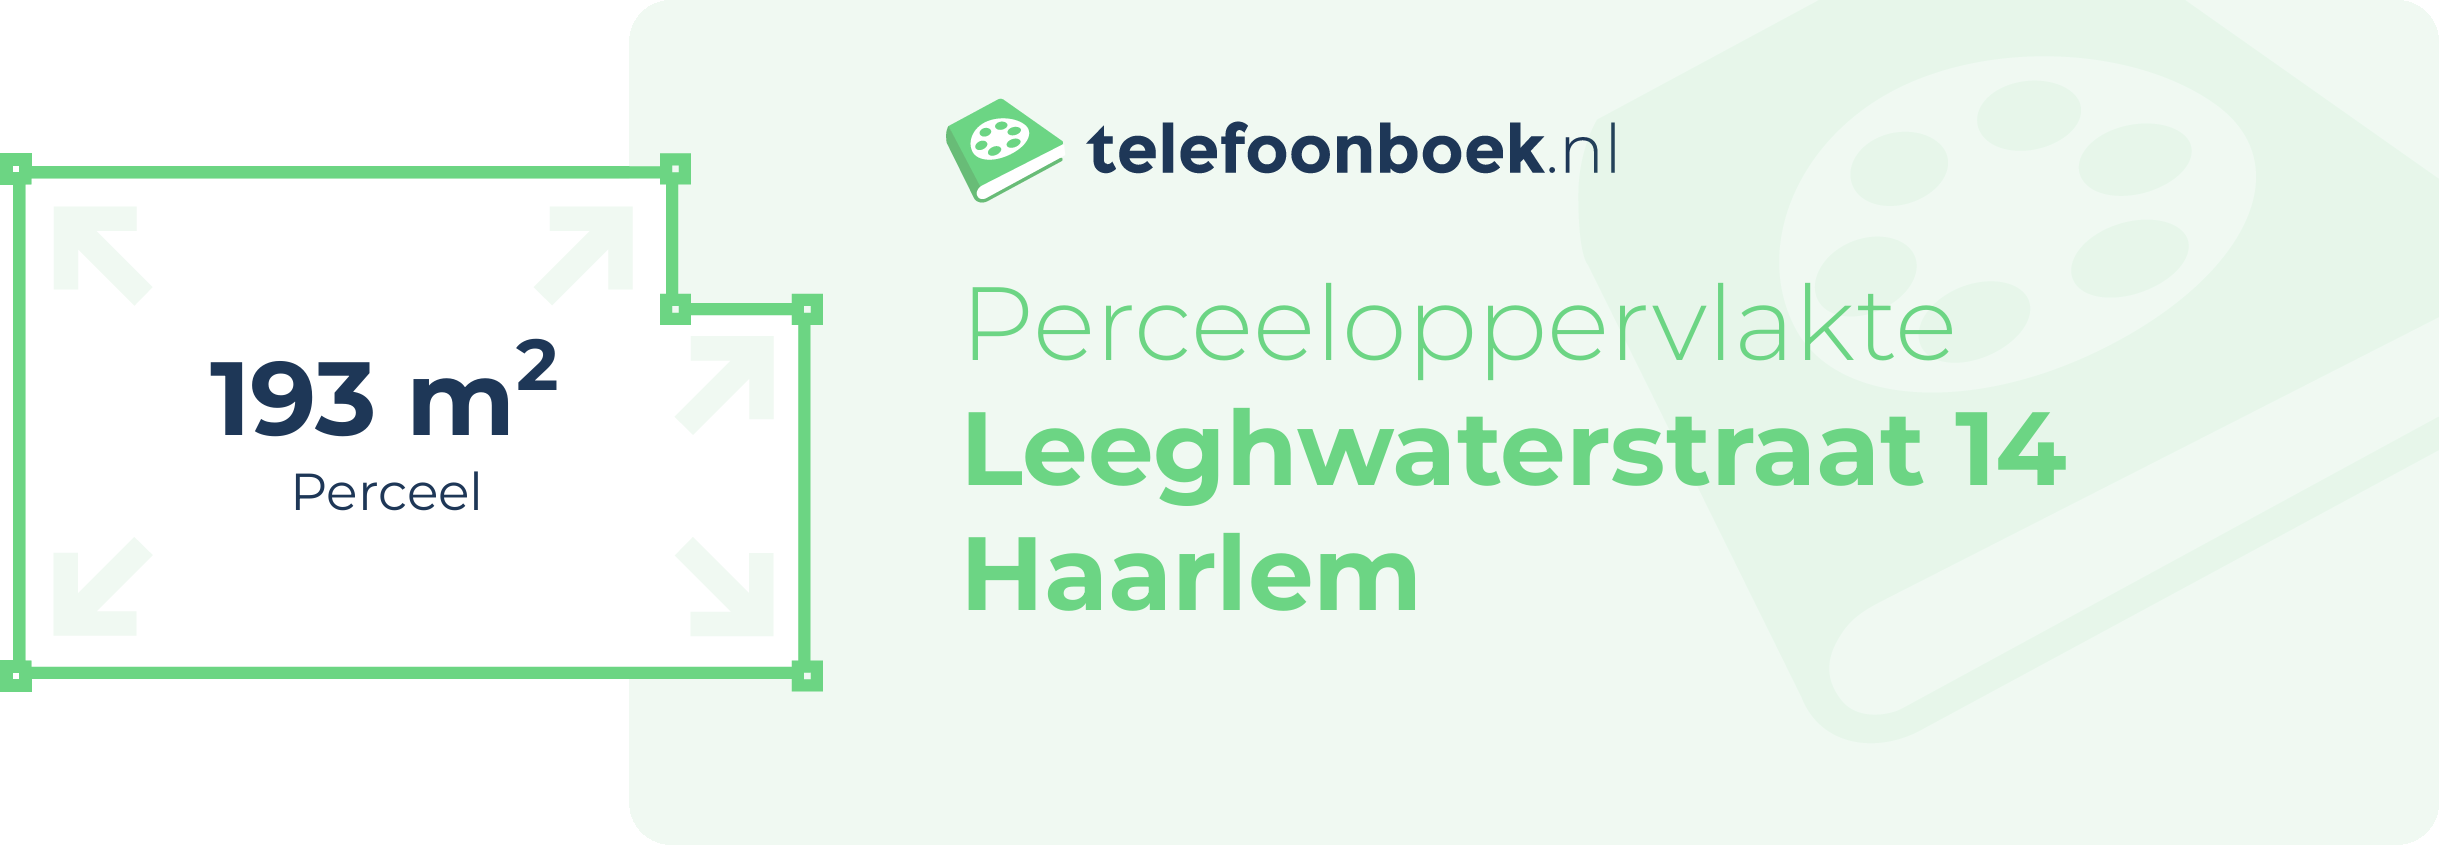 Perceeloppervlakte Leeghwaterstraat 14 Haarlem